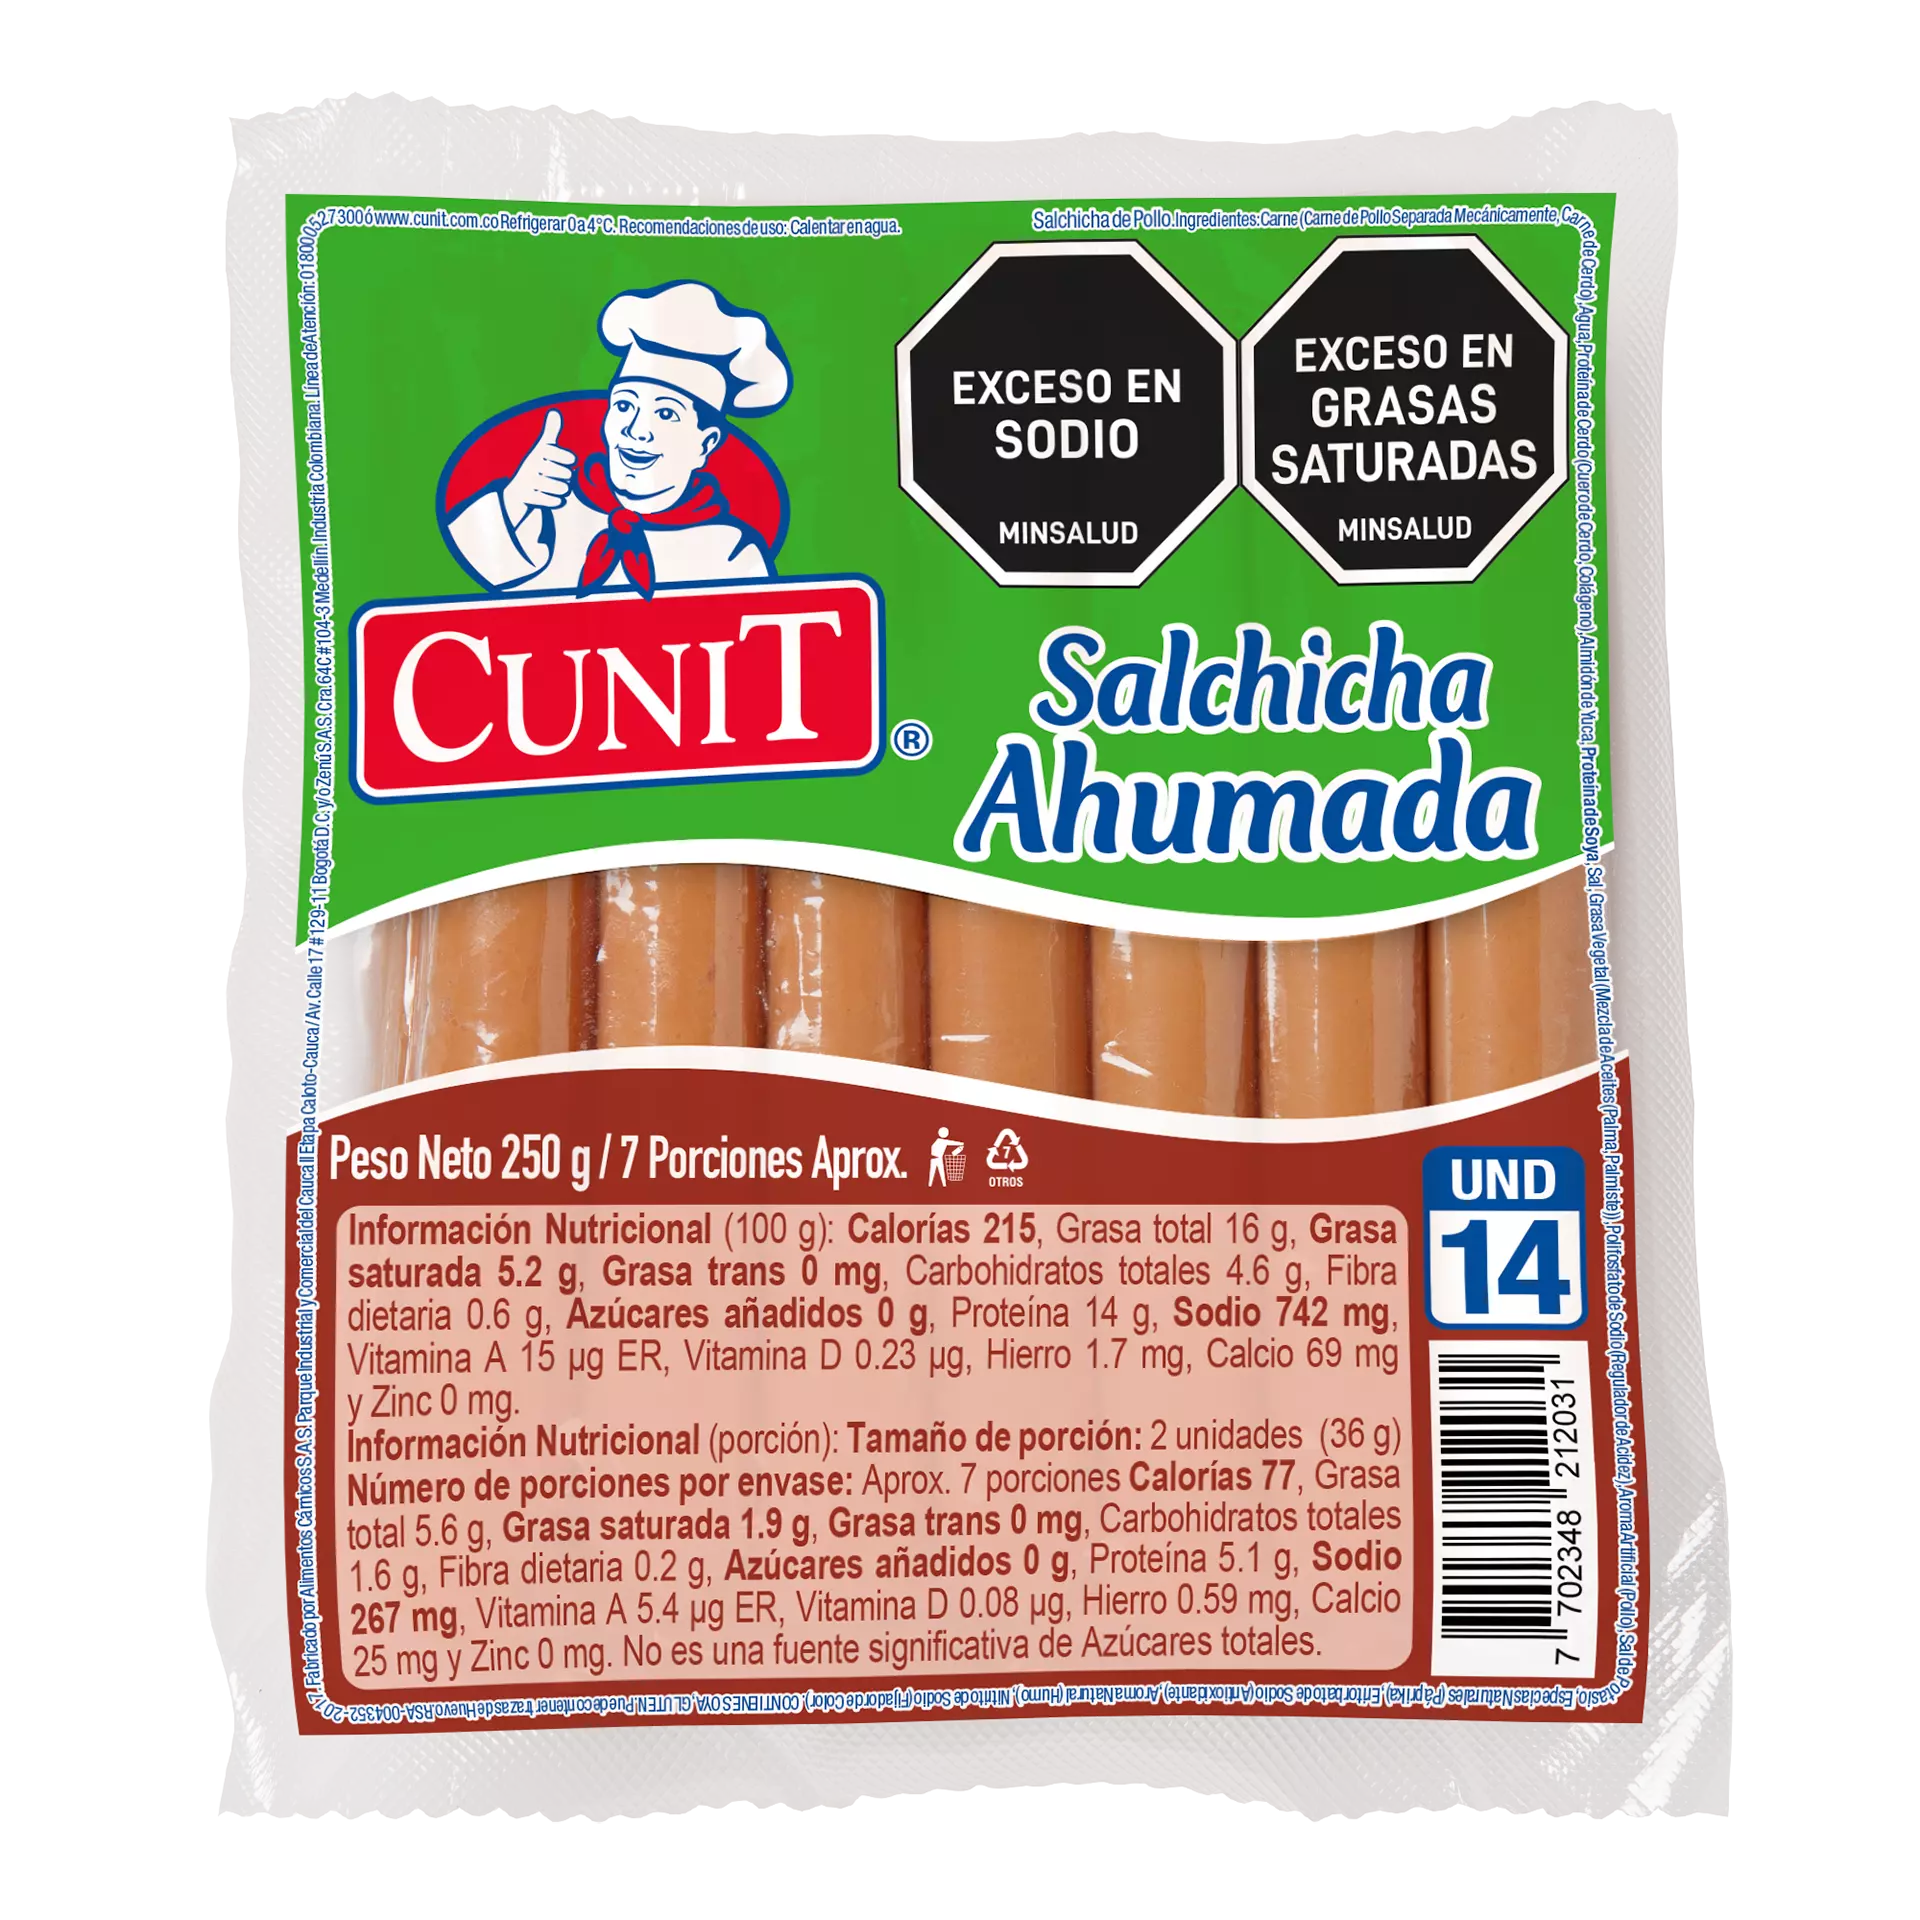 Salchicha - Salchicha ahumada - salchicha Cunit - Cunit - como cocinar salchichas ahumadas